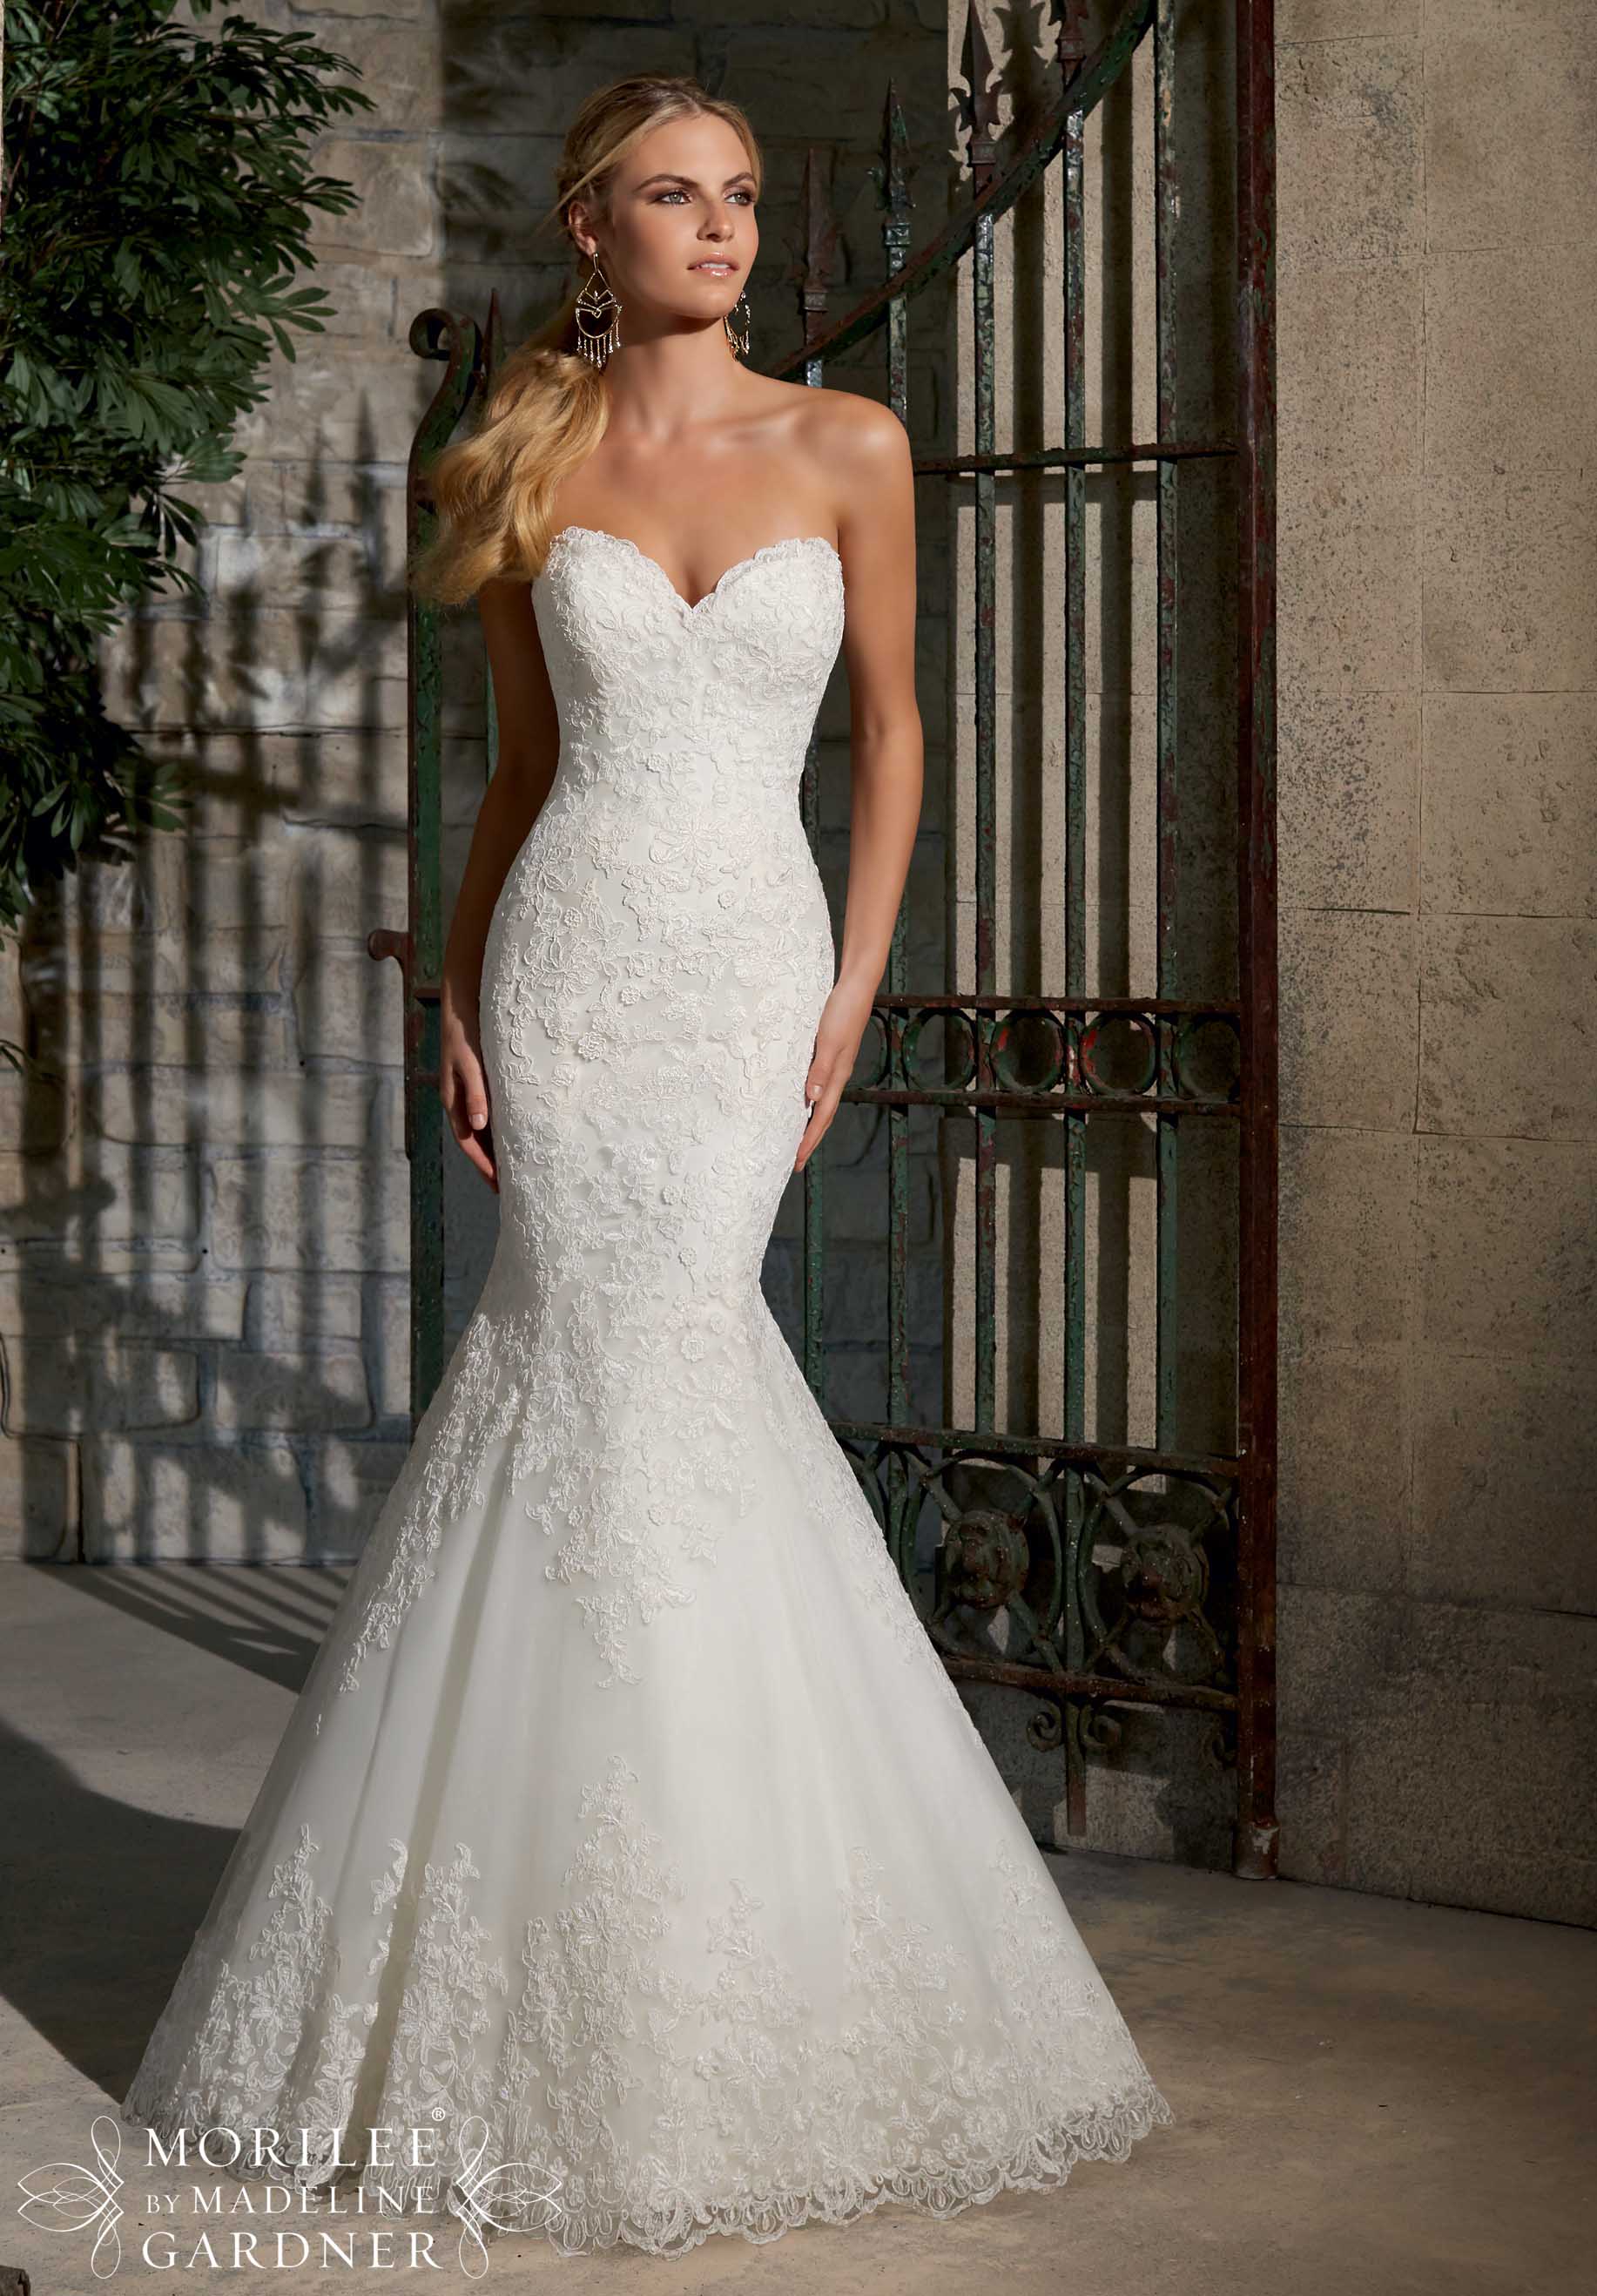 Wedding Dress Mori Lee Bridal Spring 2015 Collection 2713 Elegant